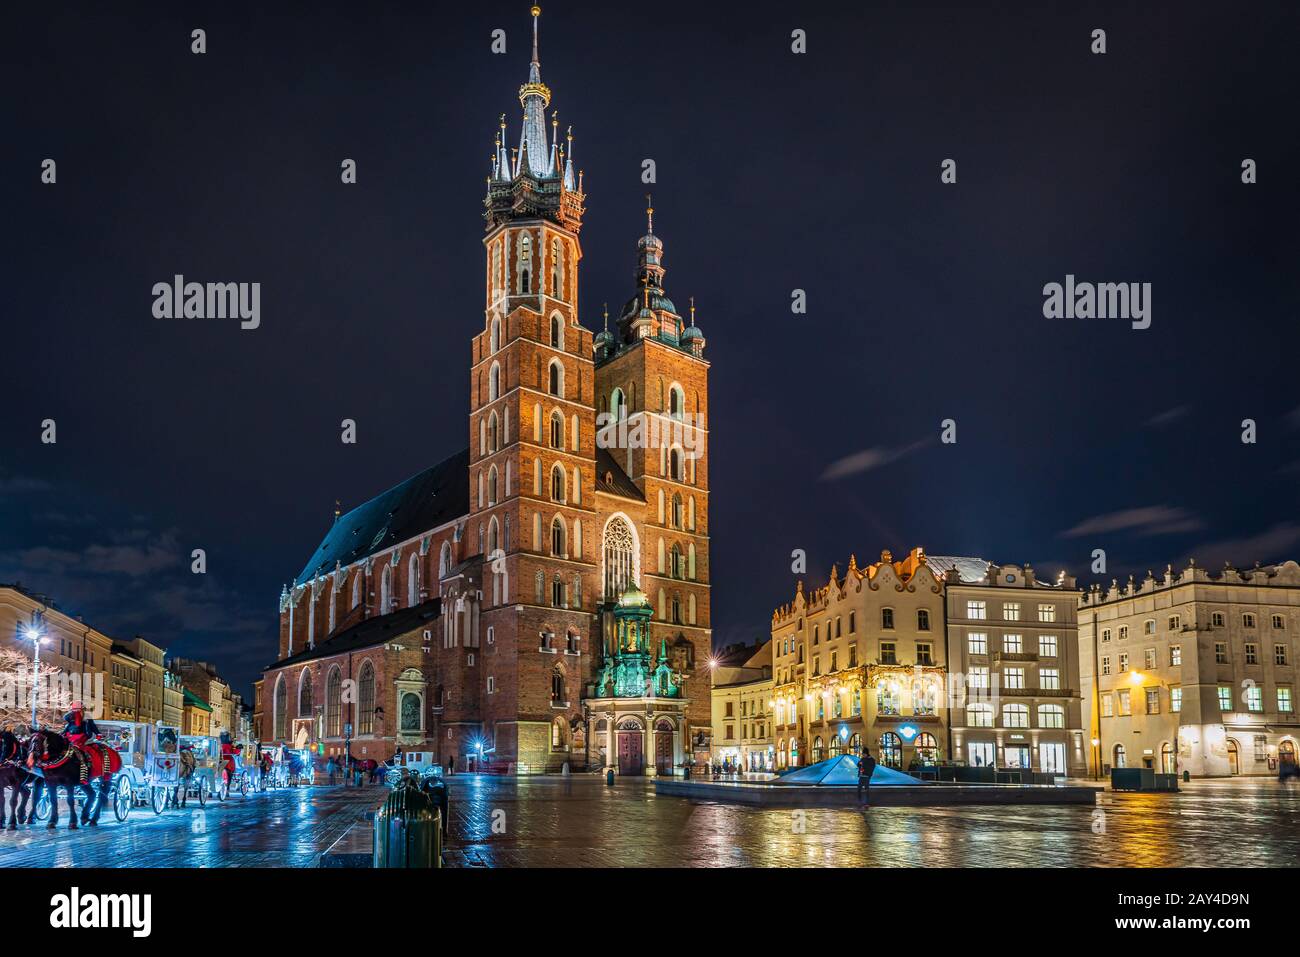 Krakow market square with St Mary's Basilica at night, Krakow, Poland Stock Photo